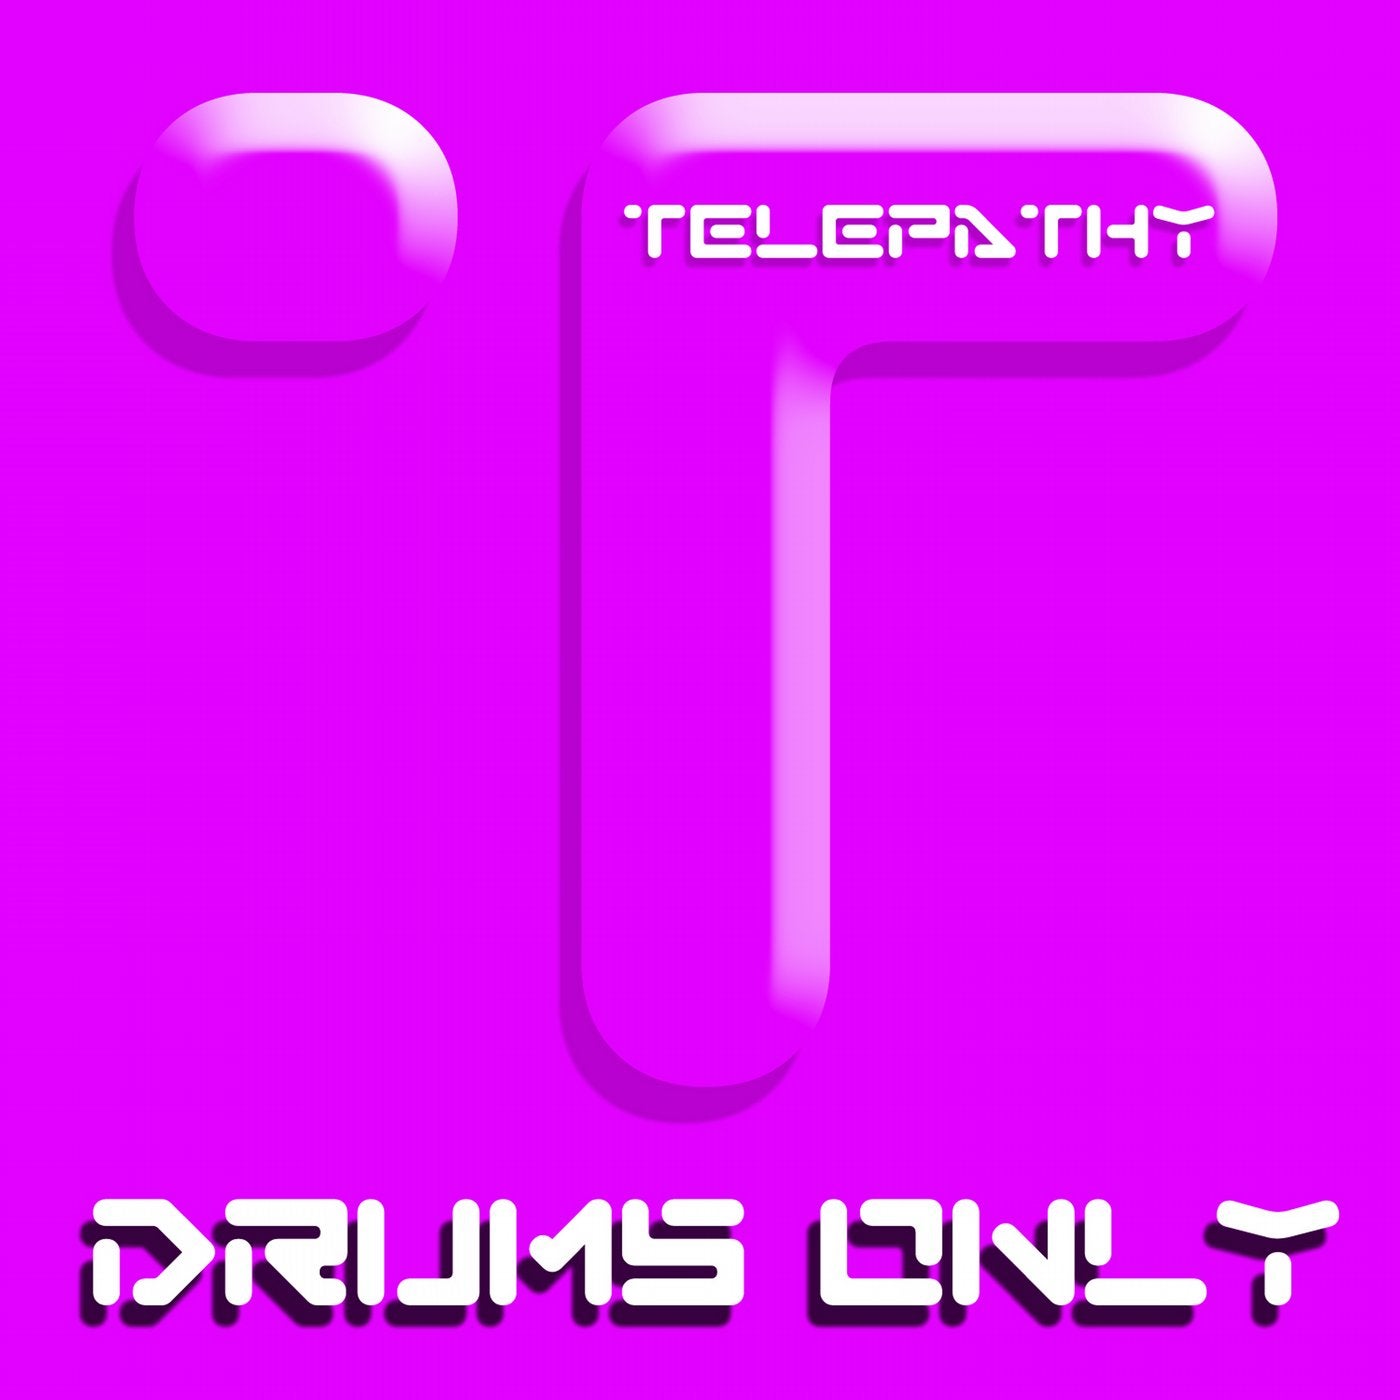 Beats Drums & Percussion Vol 4